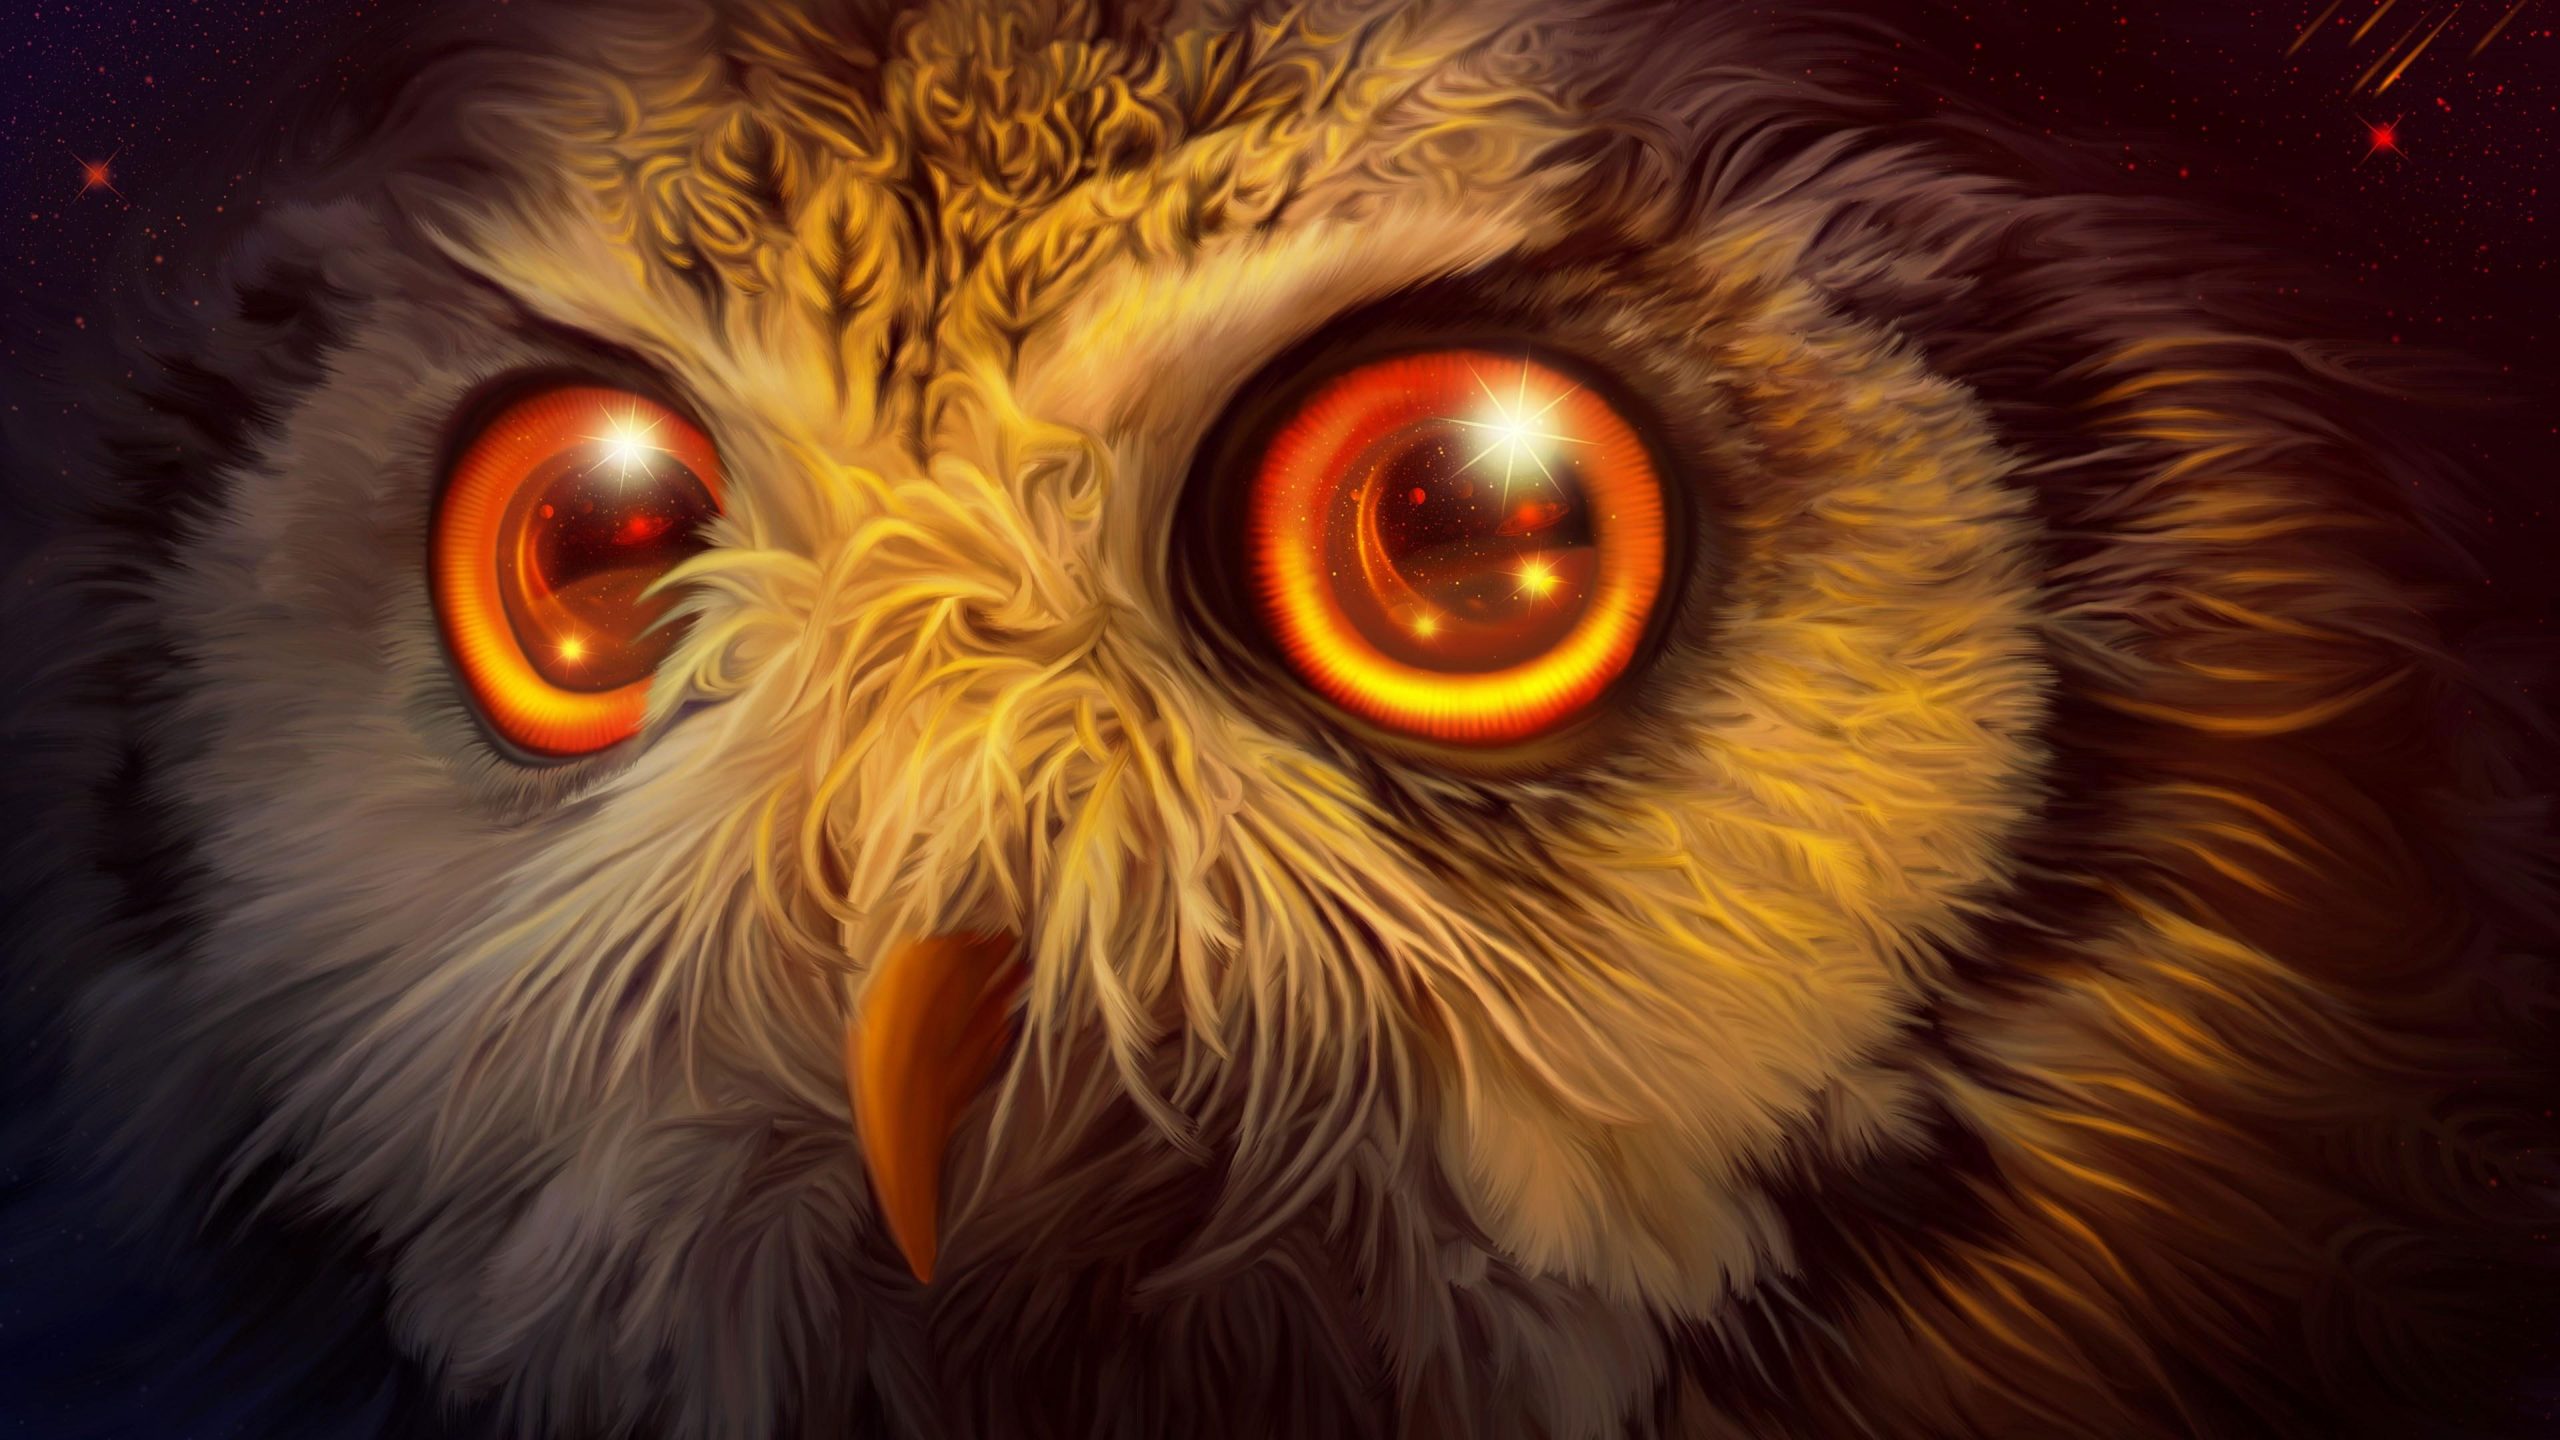 Wallpaper Owl, Fantasy Art, Illustration, Painting